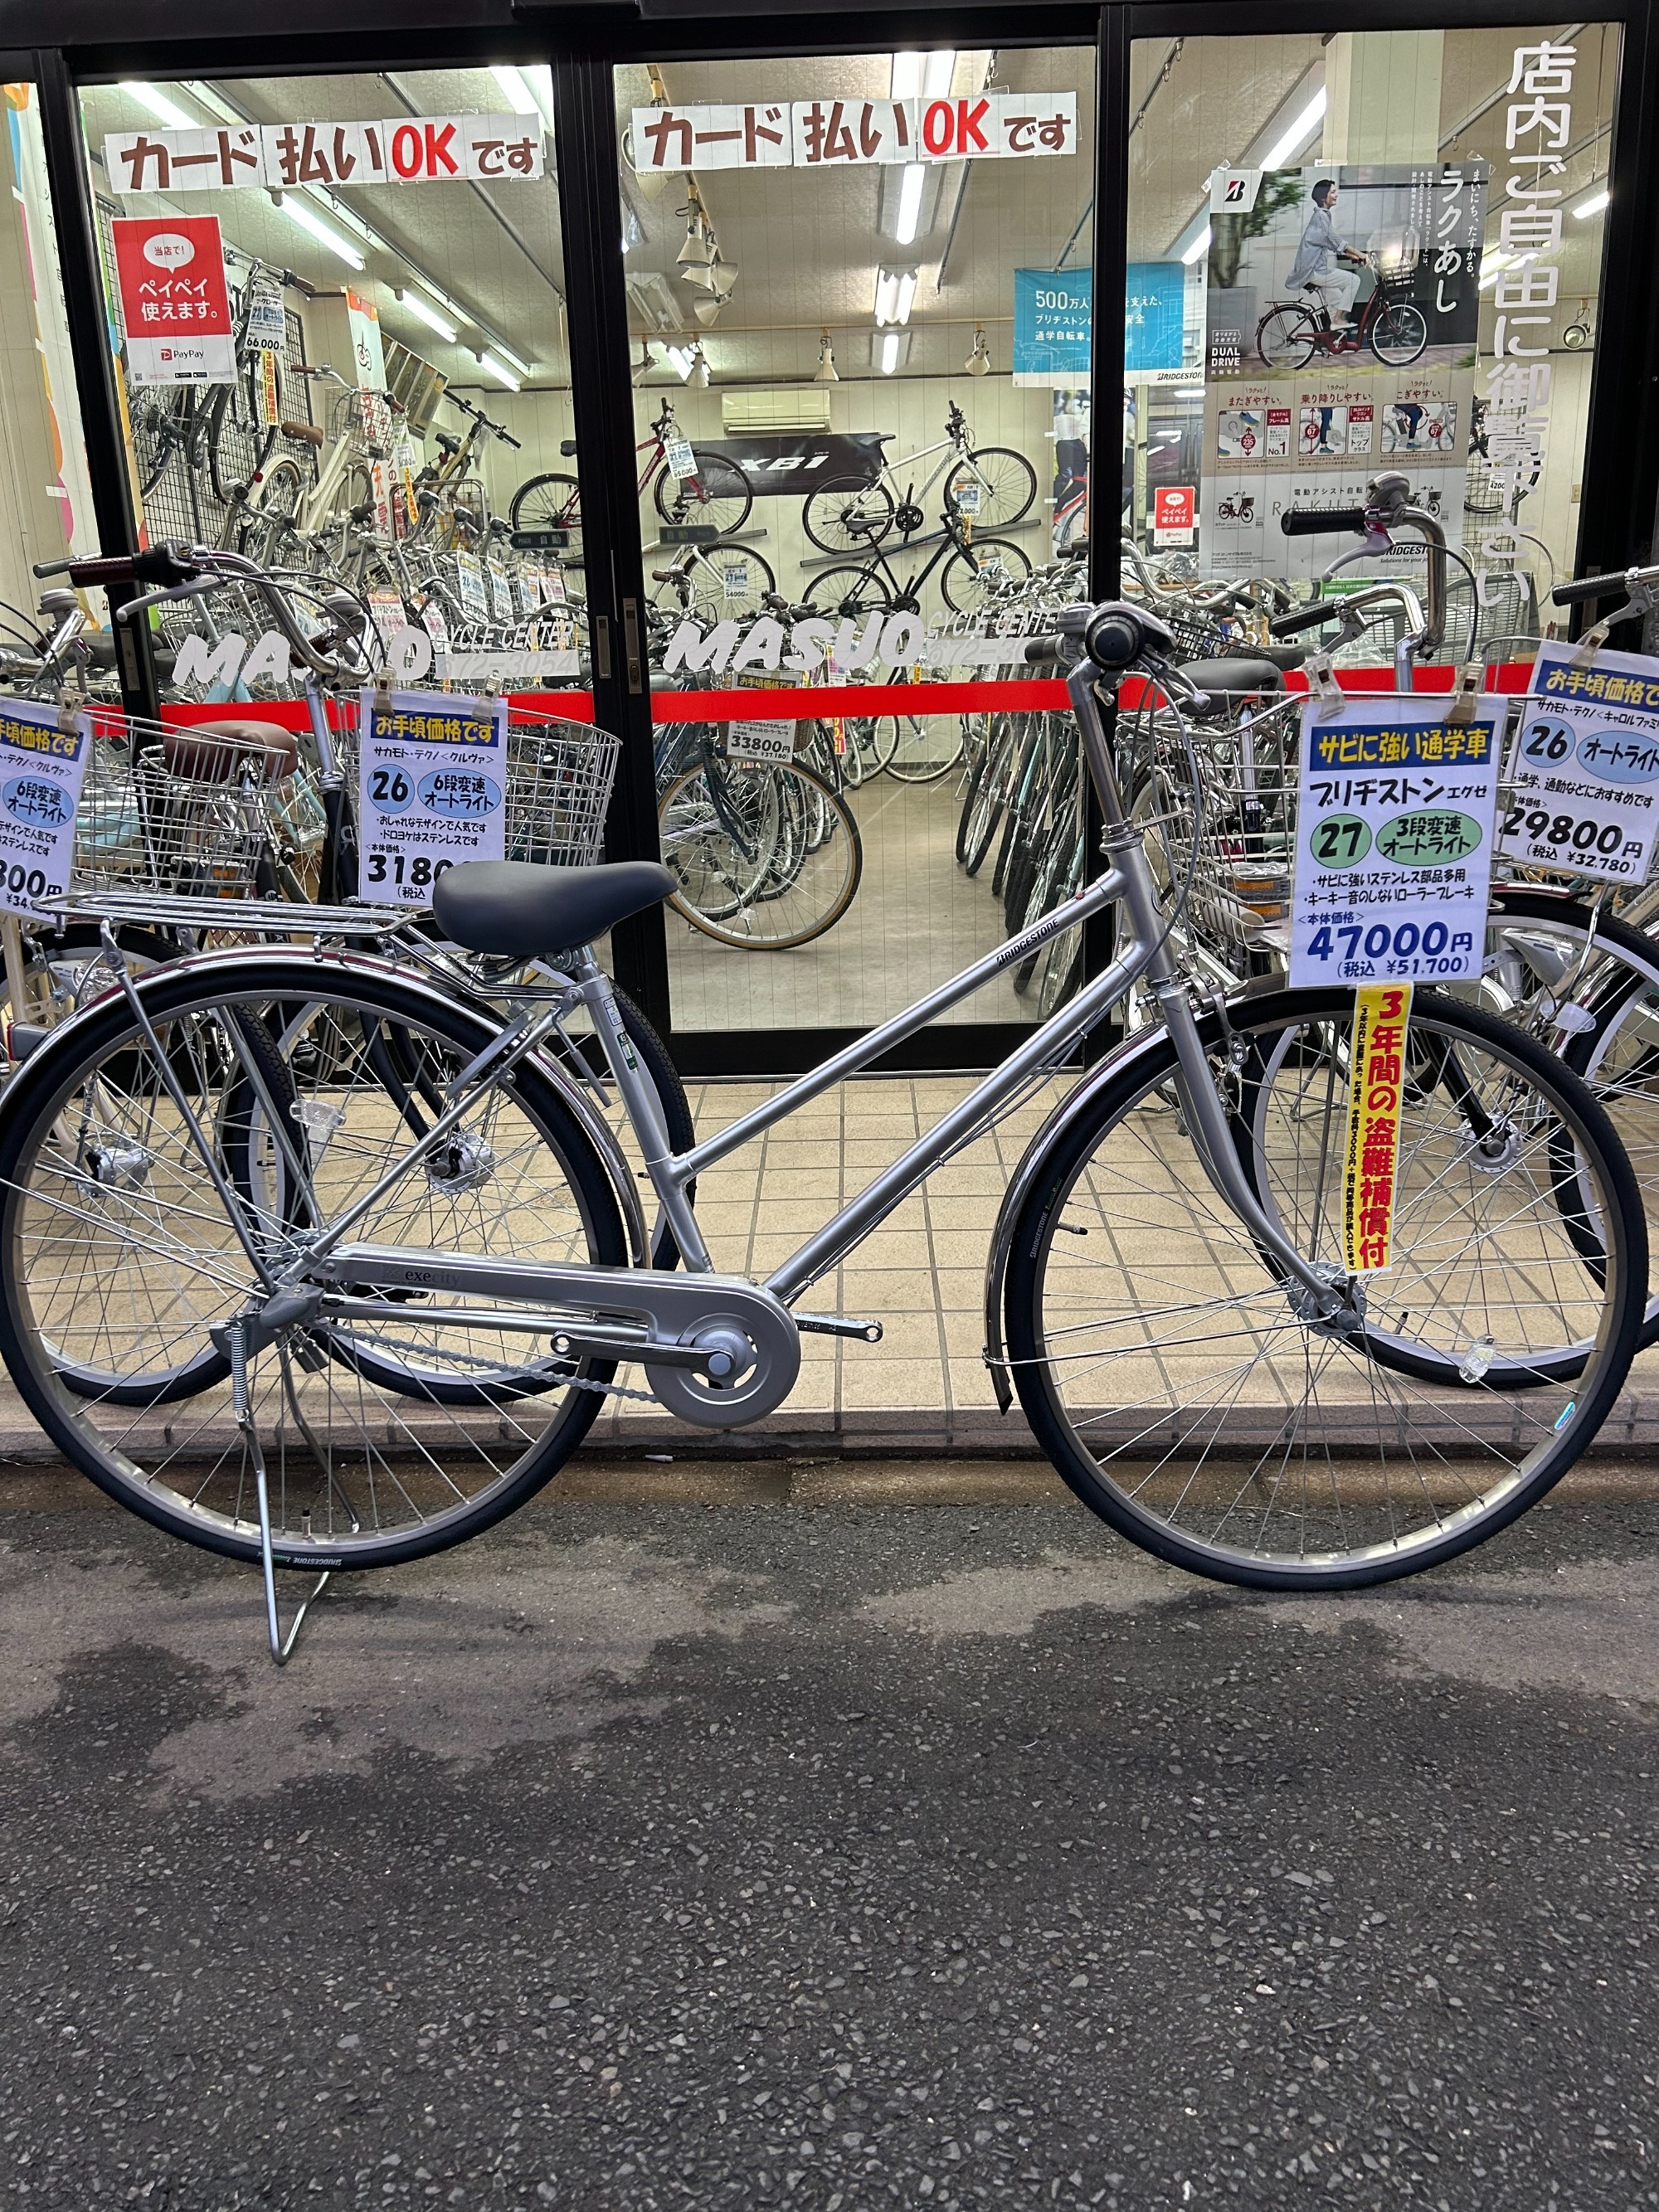 自転車店舗展示台 千葉県柏市 hommesheureux.com